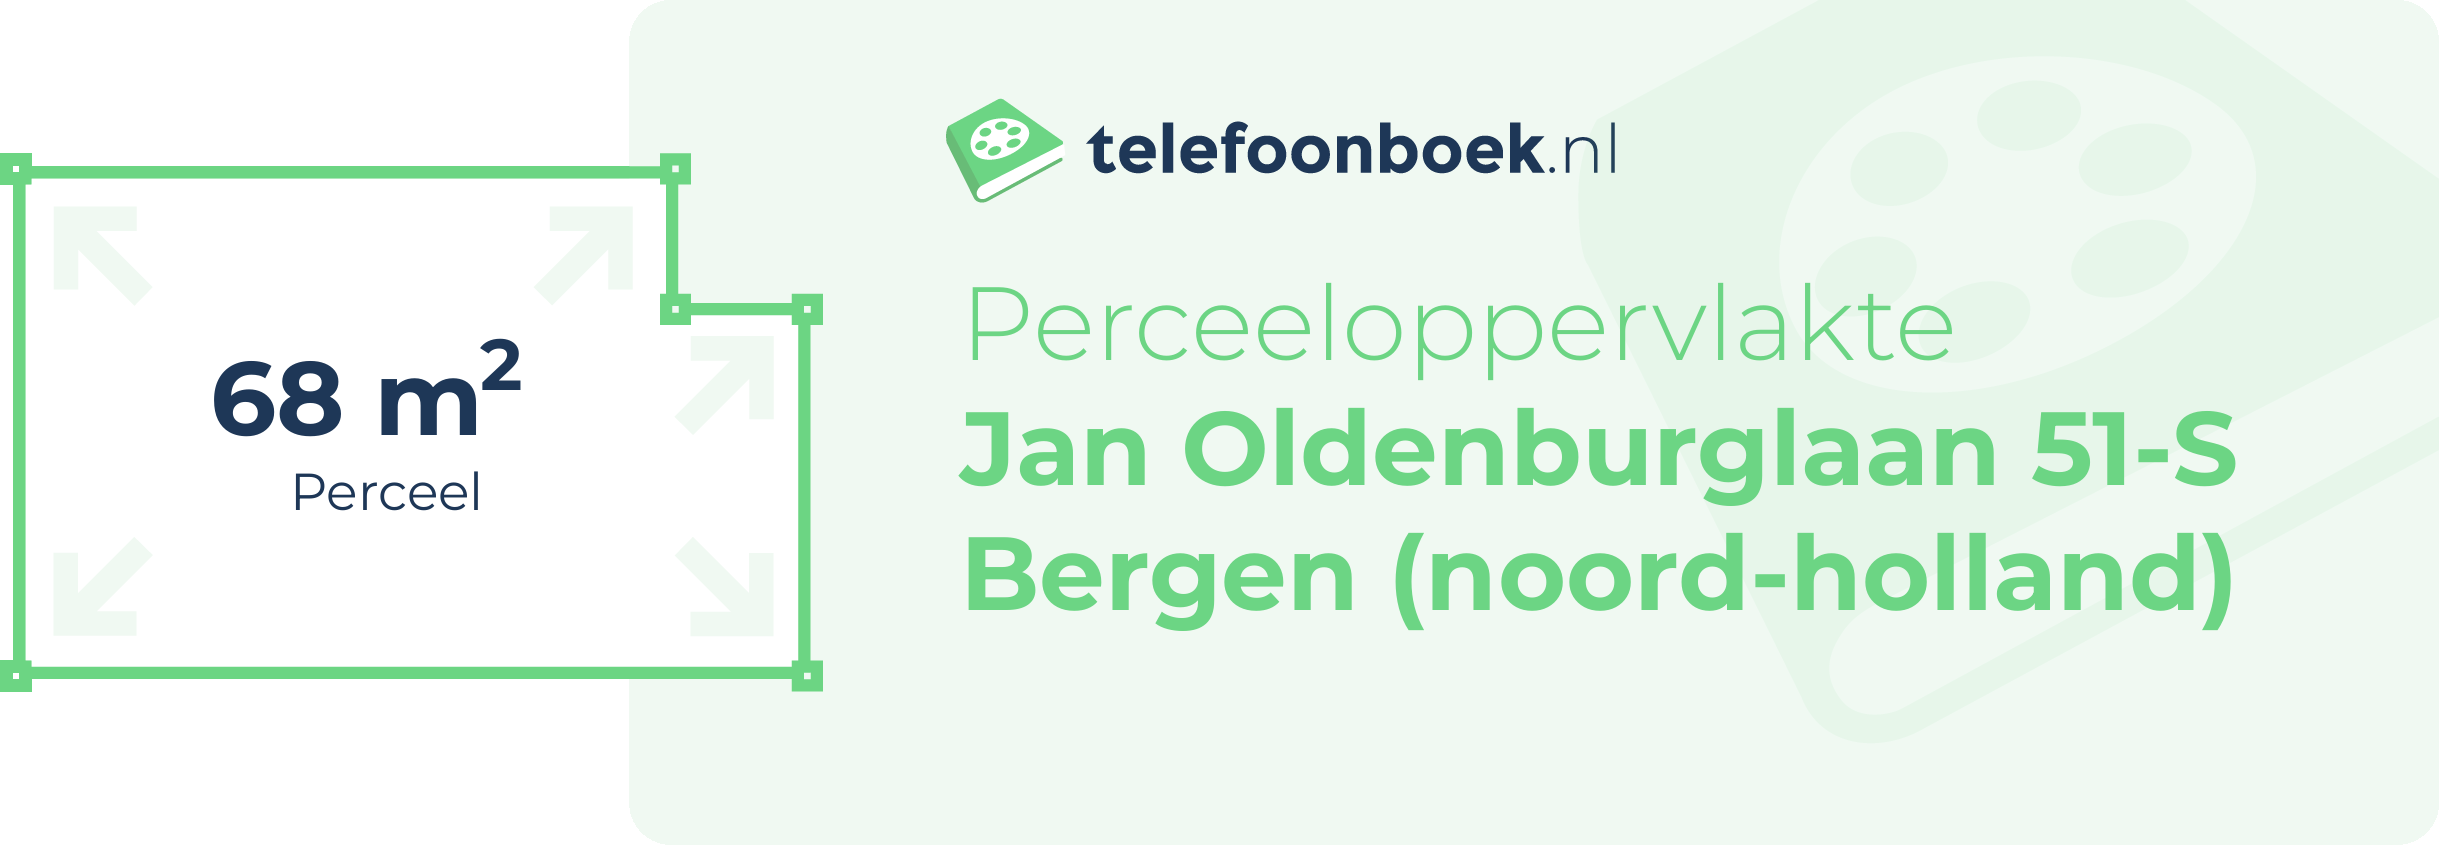 Perceeloppervlakte Jan Oldenburglaan 51-S Bergen (Noord-Holland)